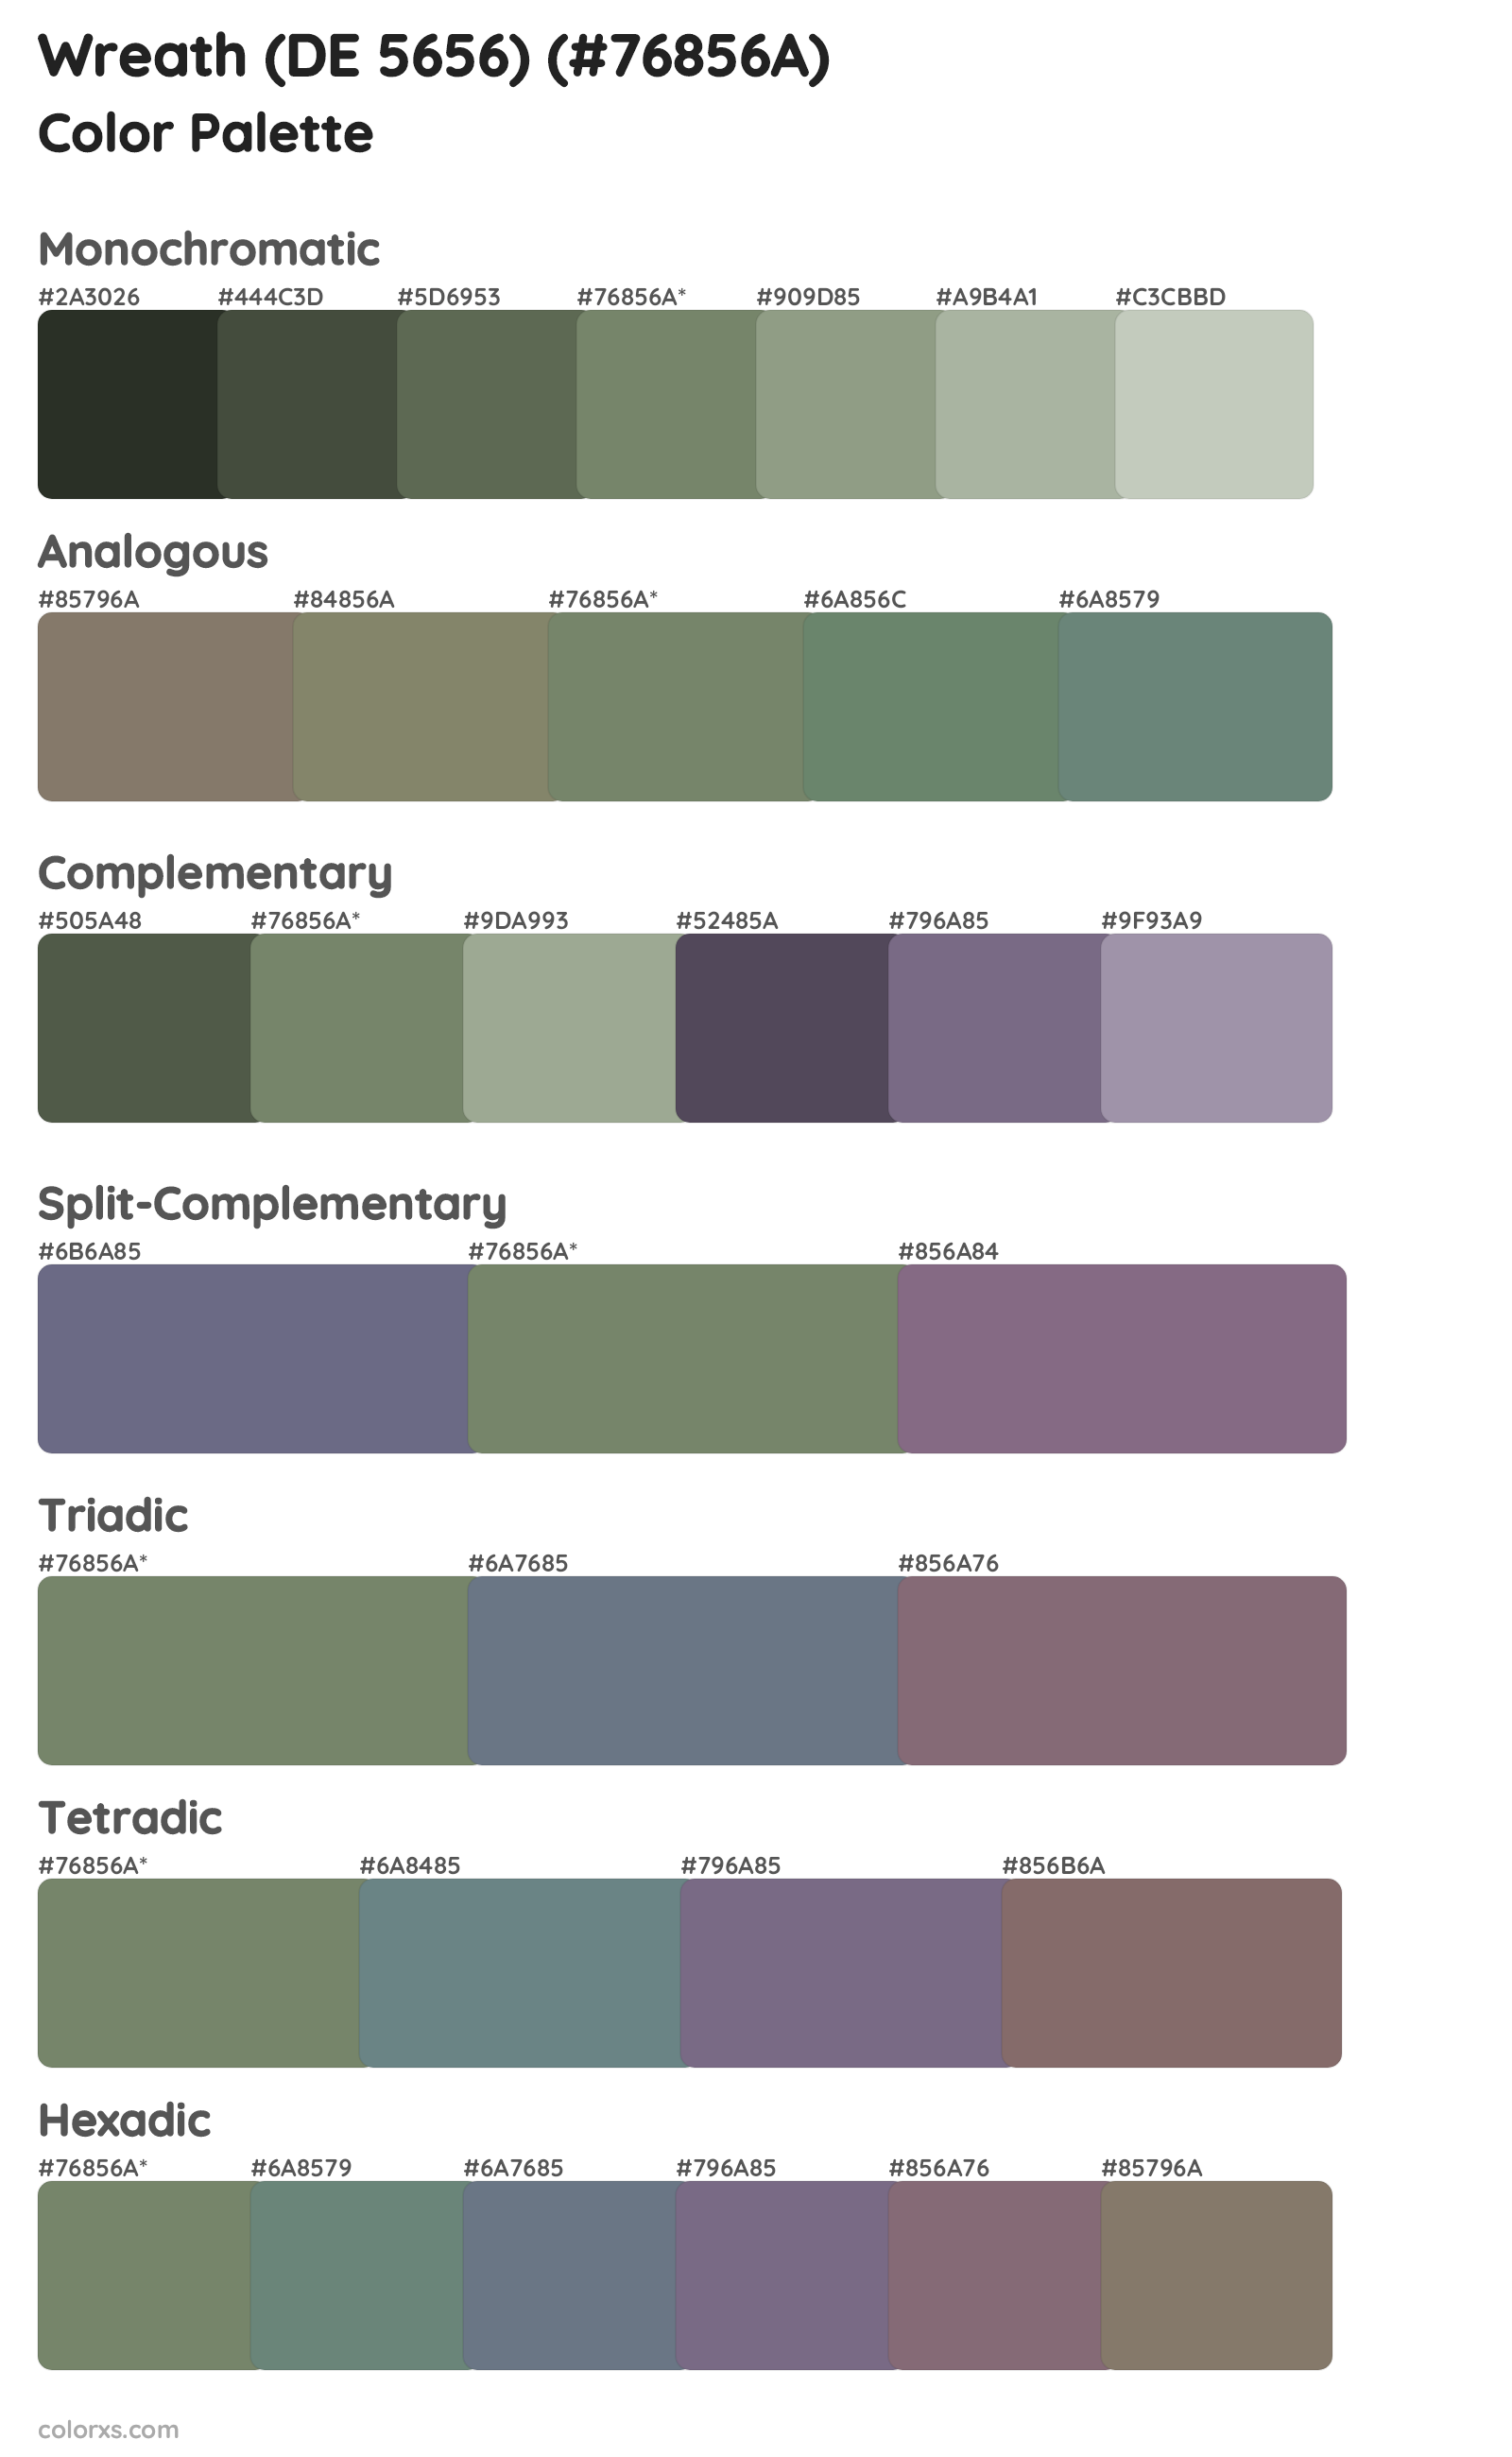 Wreath (DE 5656) Color Scheme Palettes